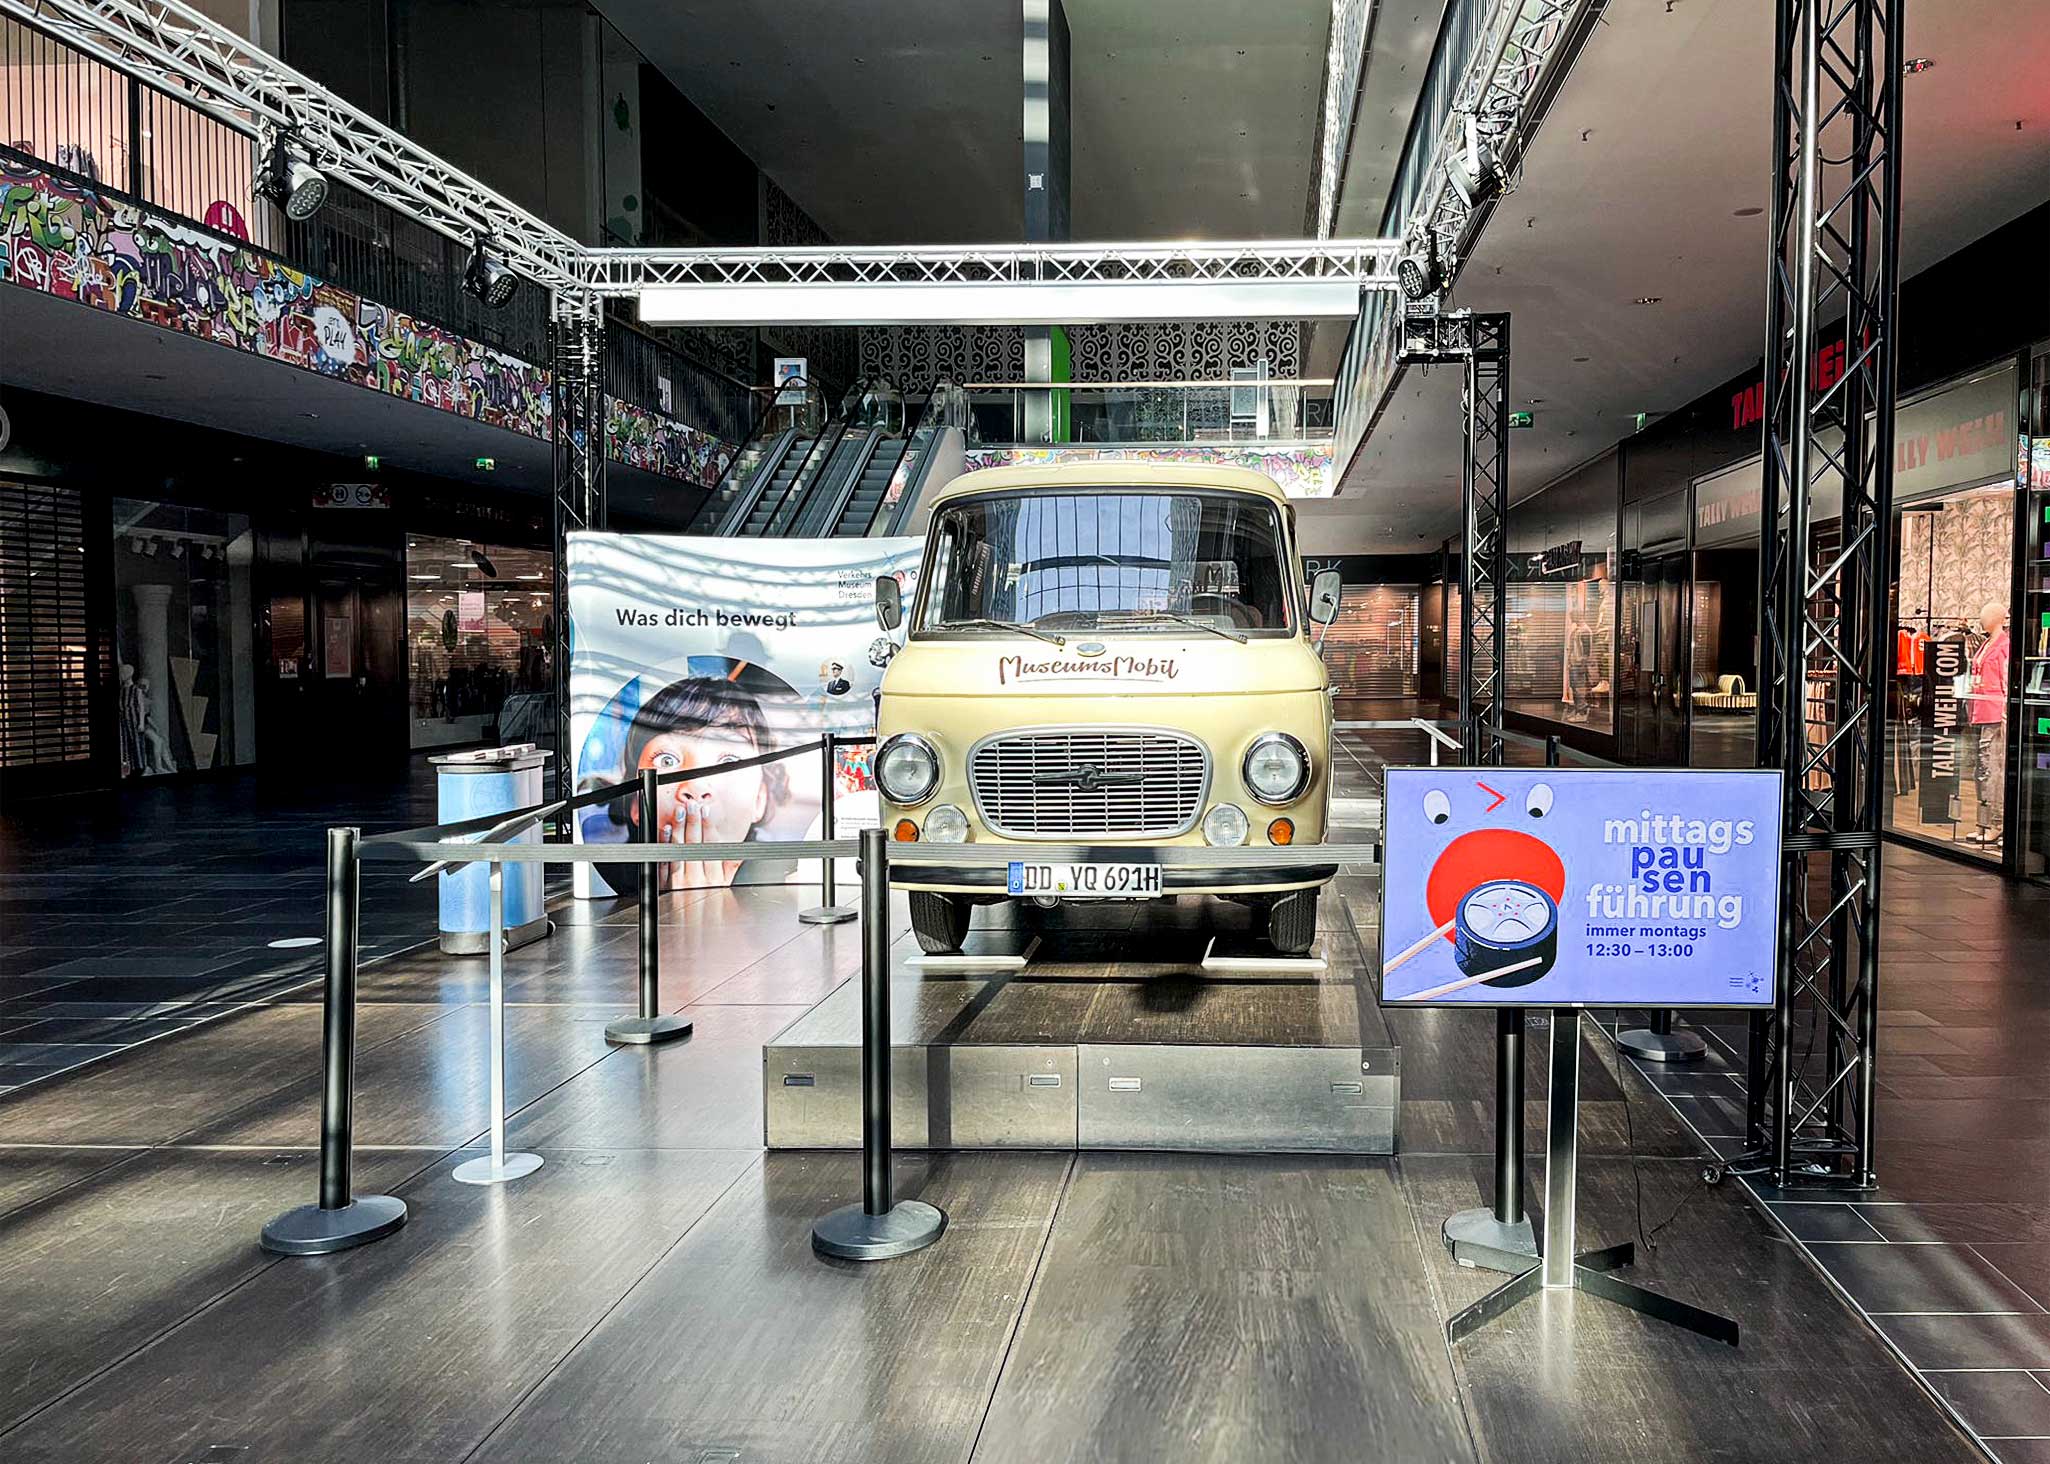 Ausstellung des Barkas B100 Museumsmobil mit dem Werbemotiv für die Mittagspausenführung in der Centrum Galerie Dresden